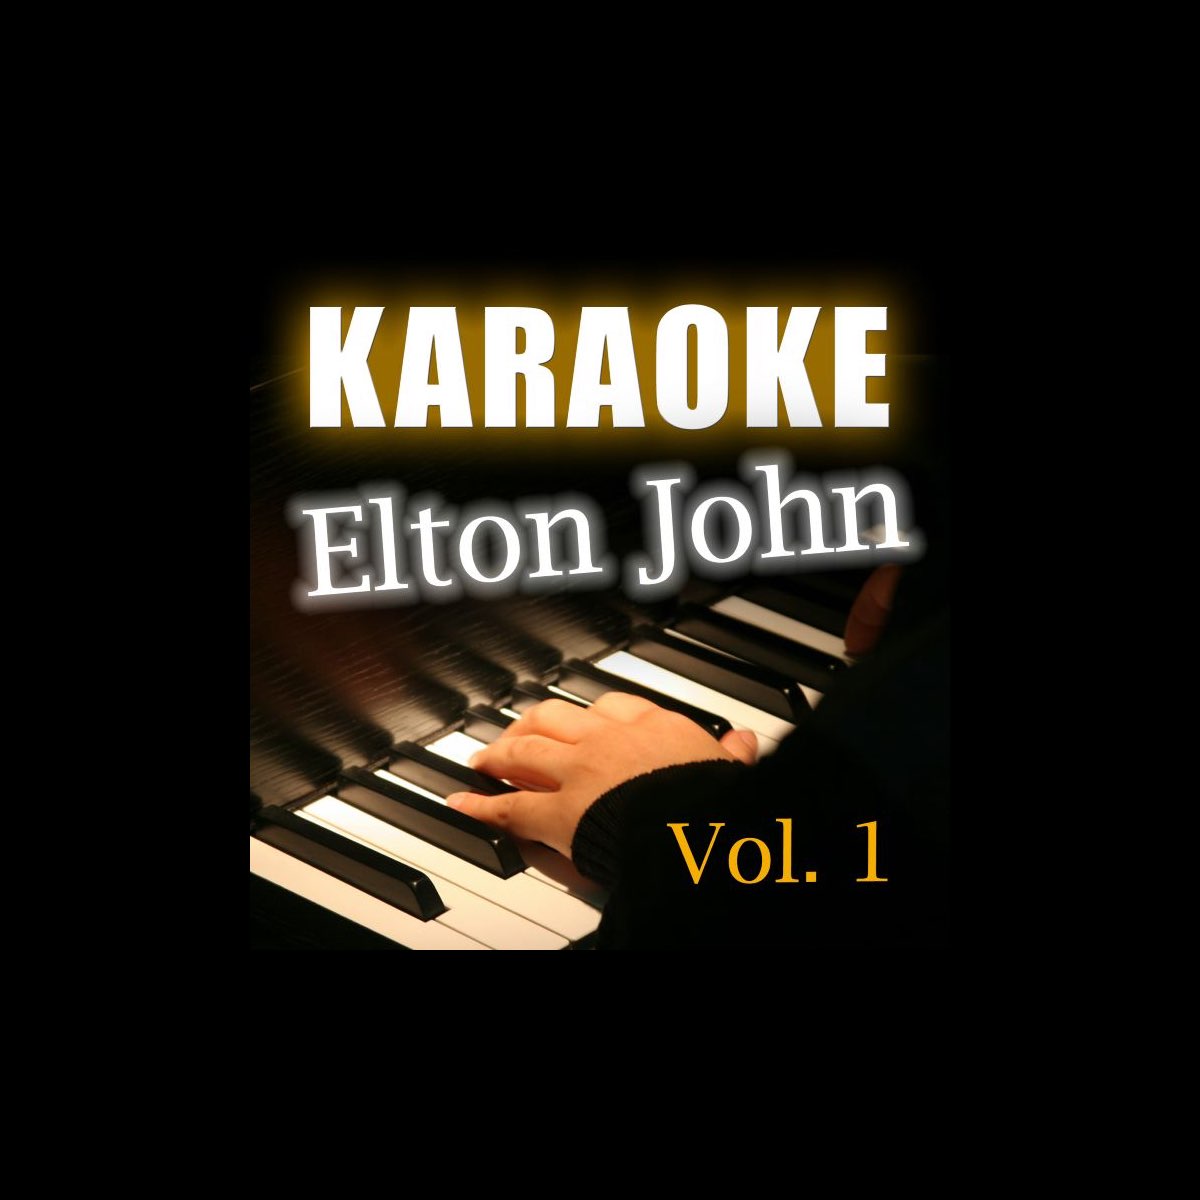 Karaoke: Elton John, Vol. 1 by Starlite Karaoke on Apple Music